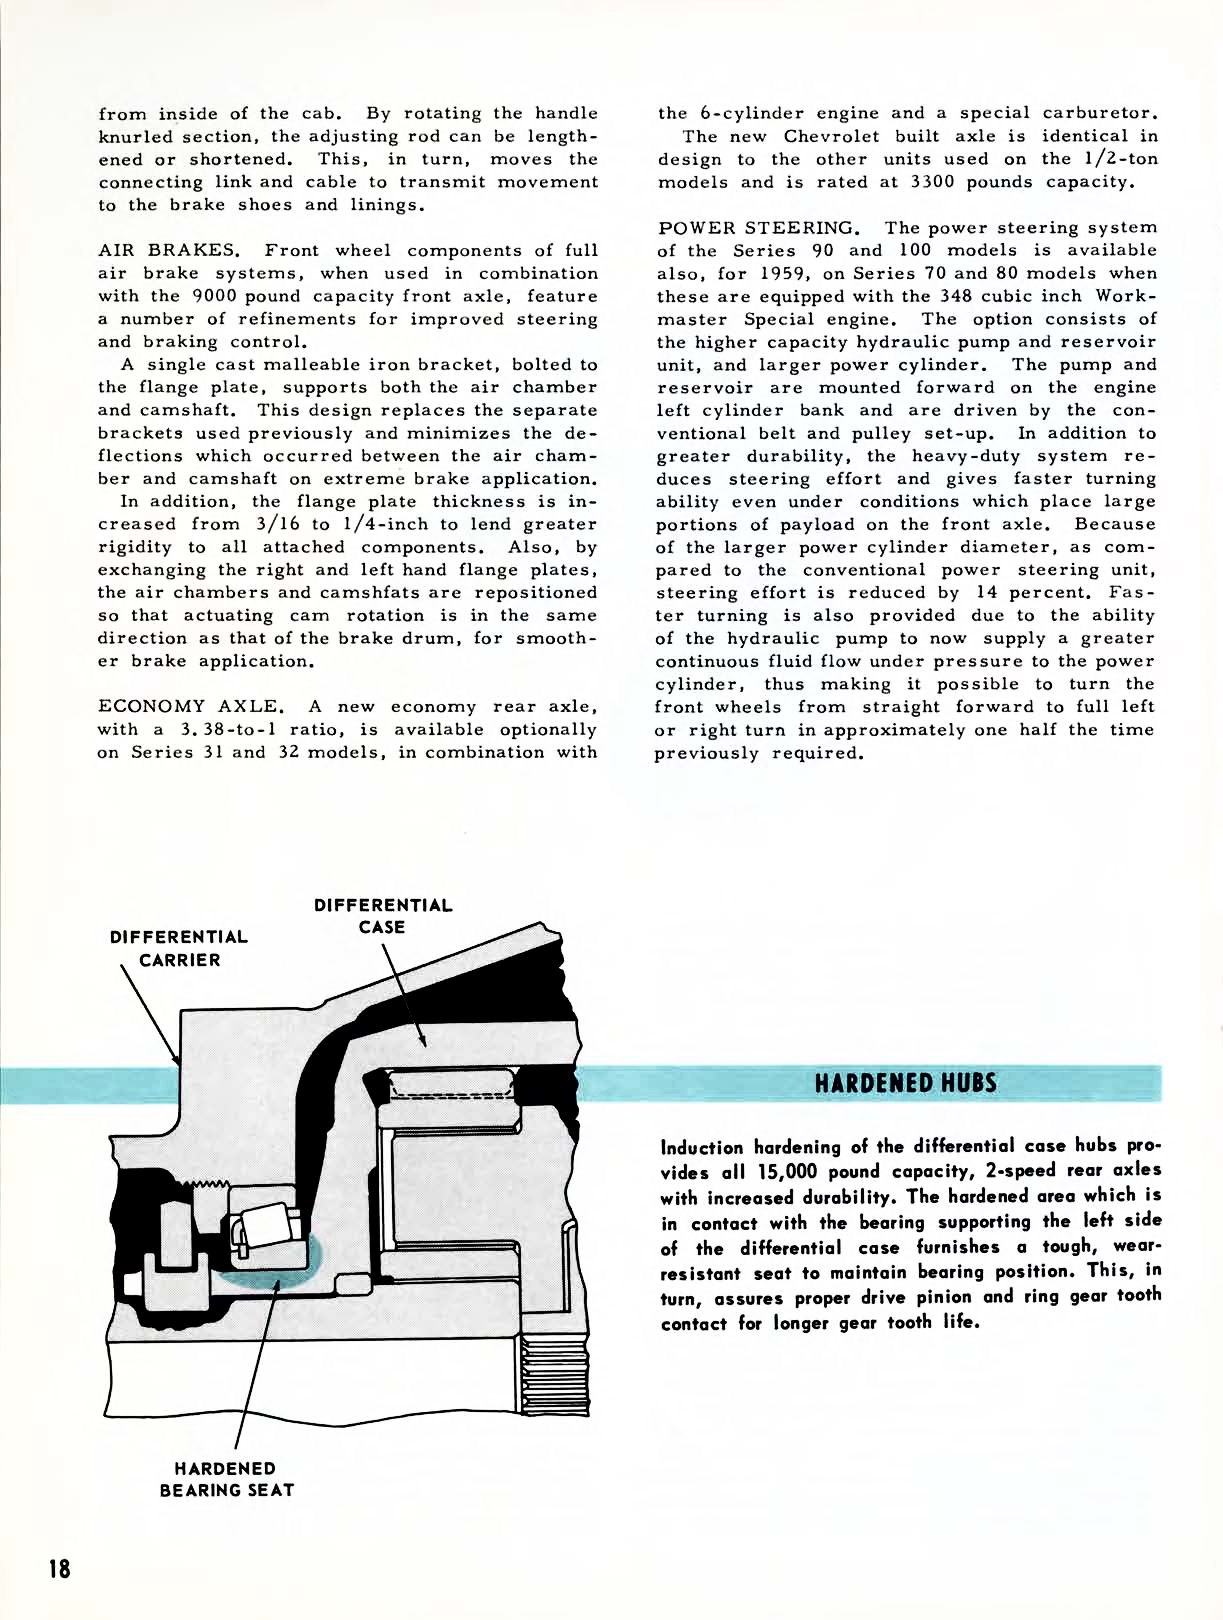 1959 Chevrolet Truck Engineering Features-18